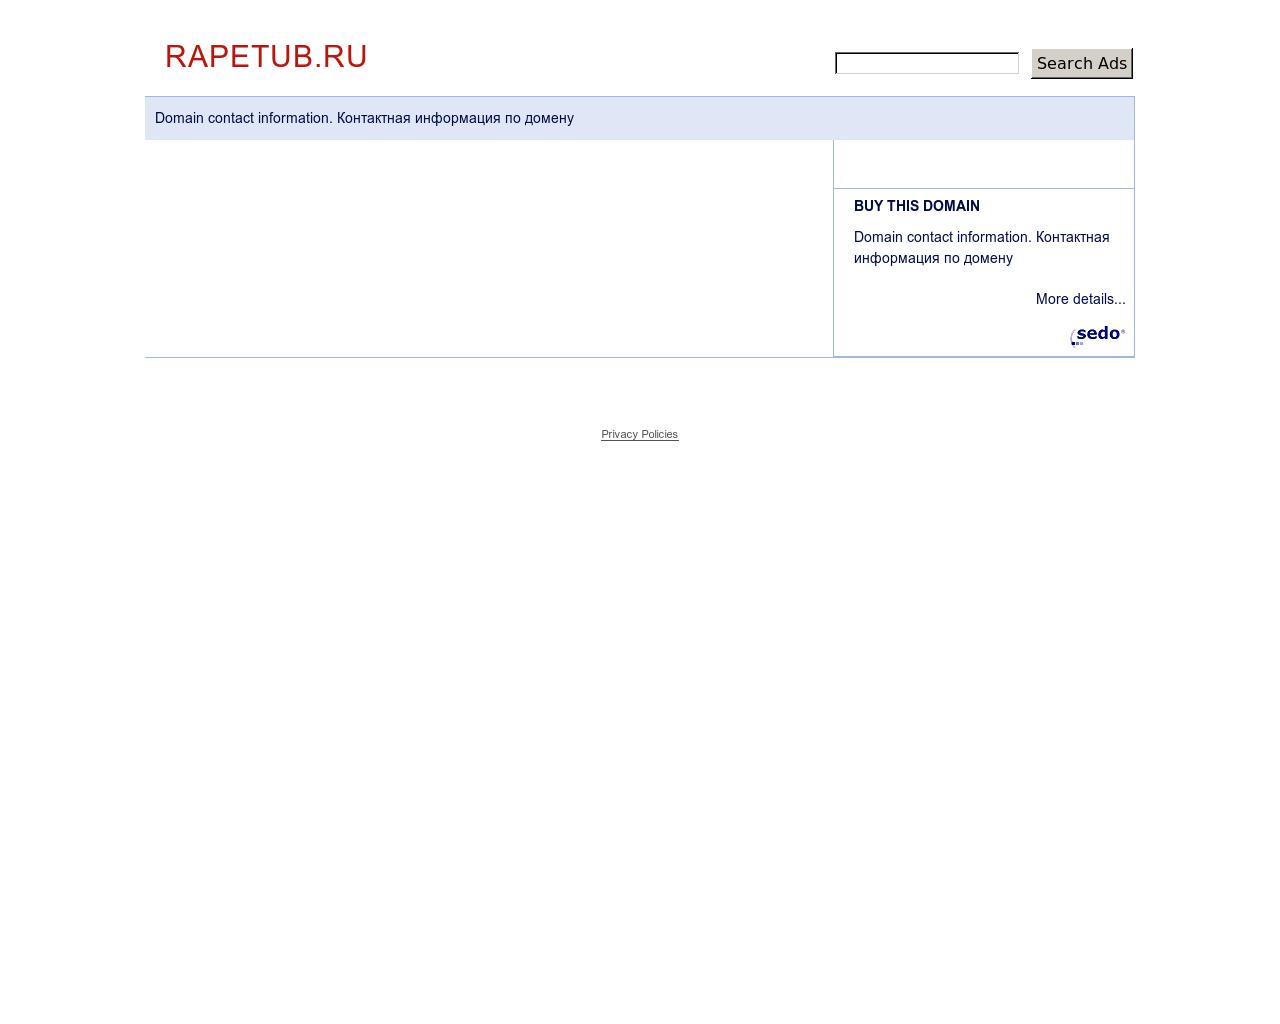 Изображение сайта rapetub.ru в разрешении 1280x1024